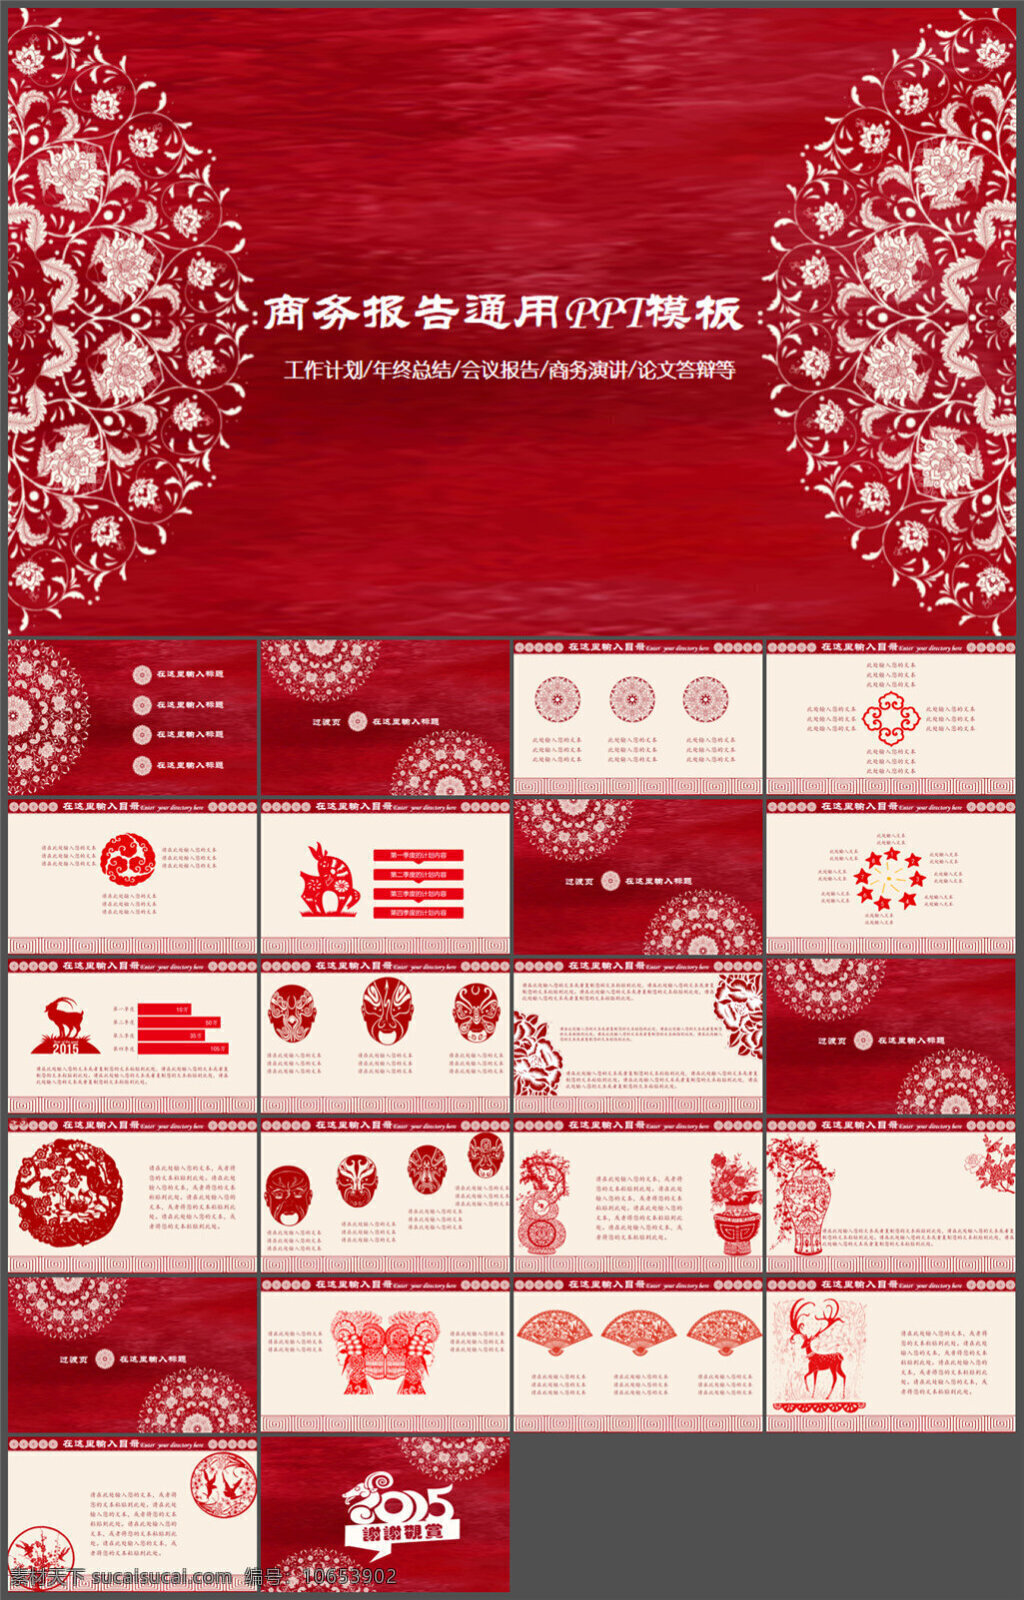 中国 风 古典 红色 模板 商务模板 多媒体设计 ppt课件 ppt源文件 制作 pptx